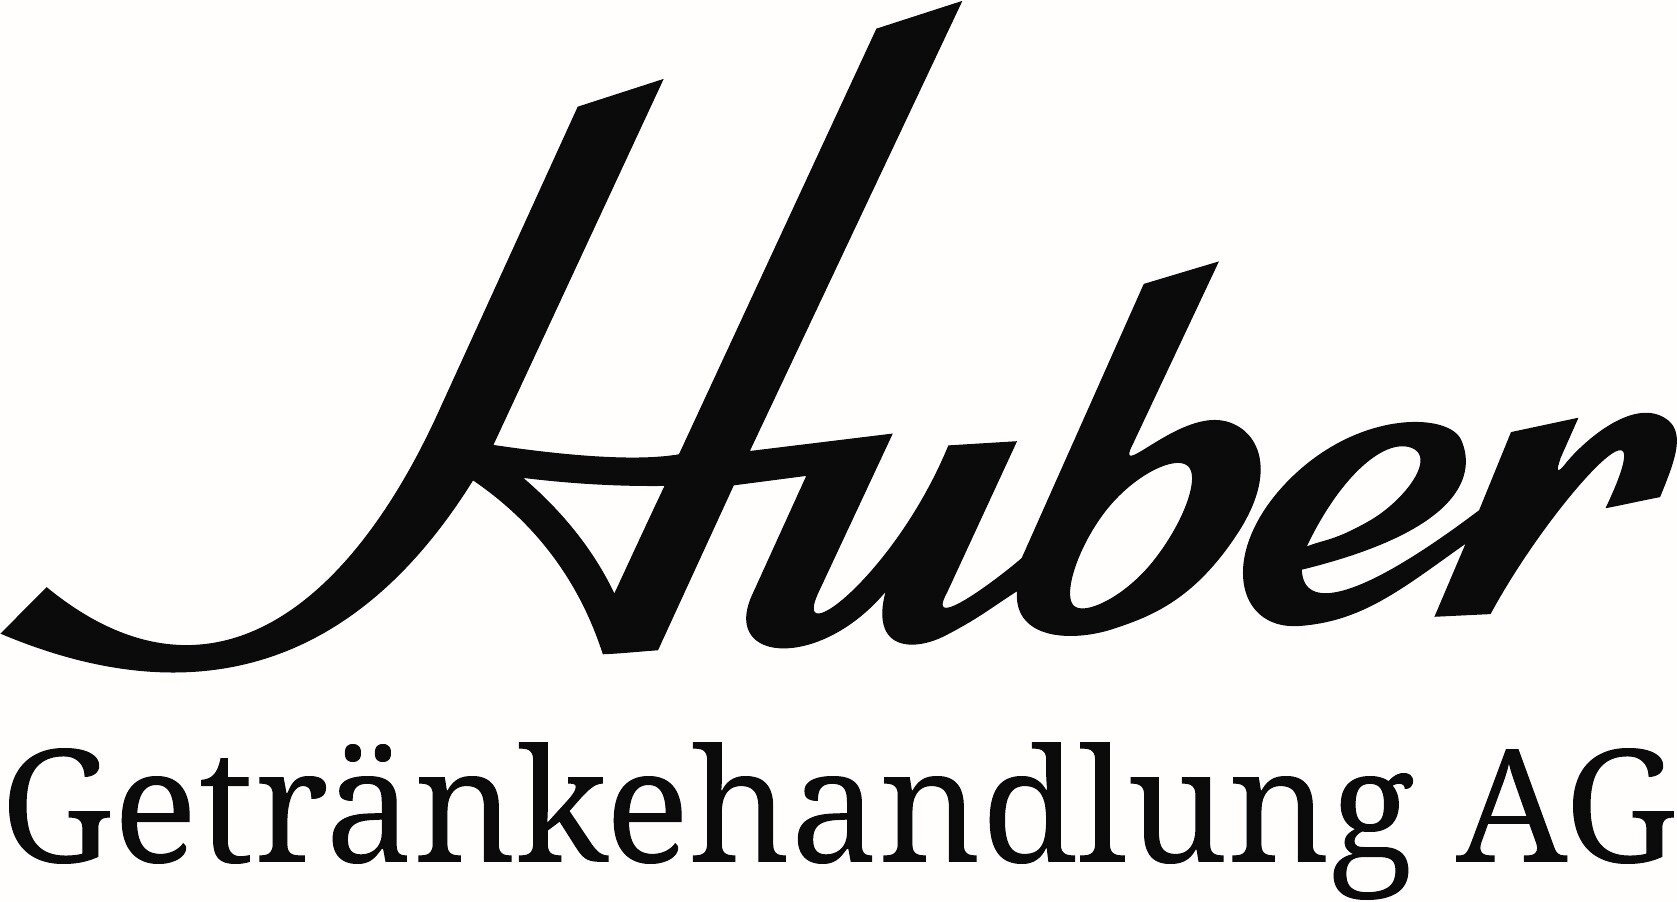 Huber Getränkehandlung AG Logo.jpg